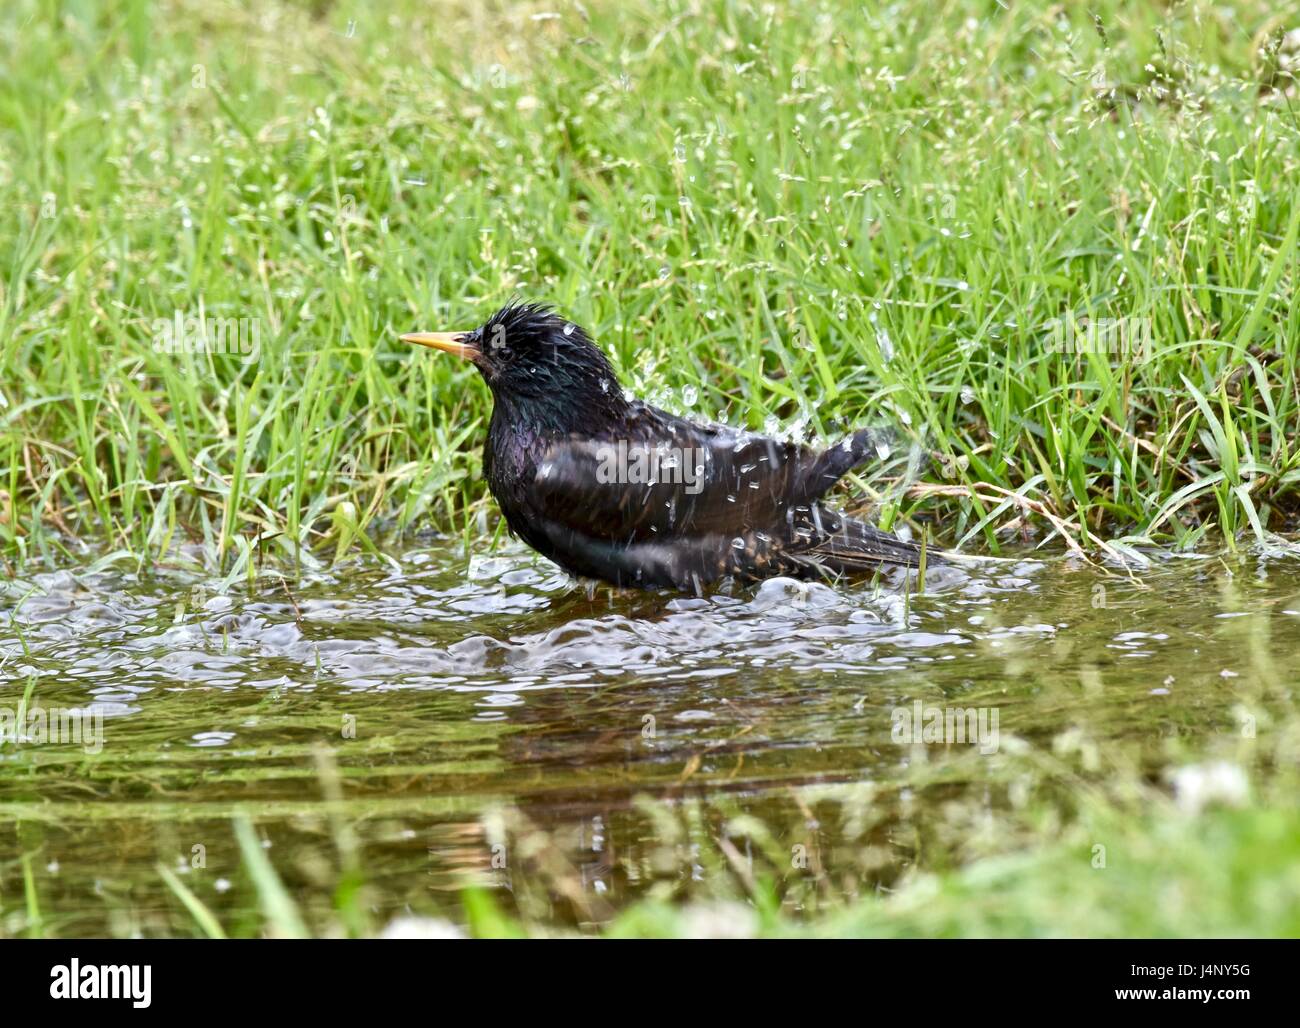 Unione starling (Sturnus vulgaris) la balneazione in una piccola pozza d'acqua Foto Stock